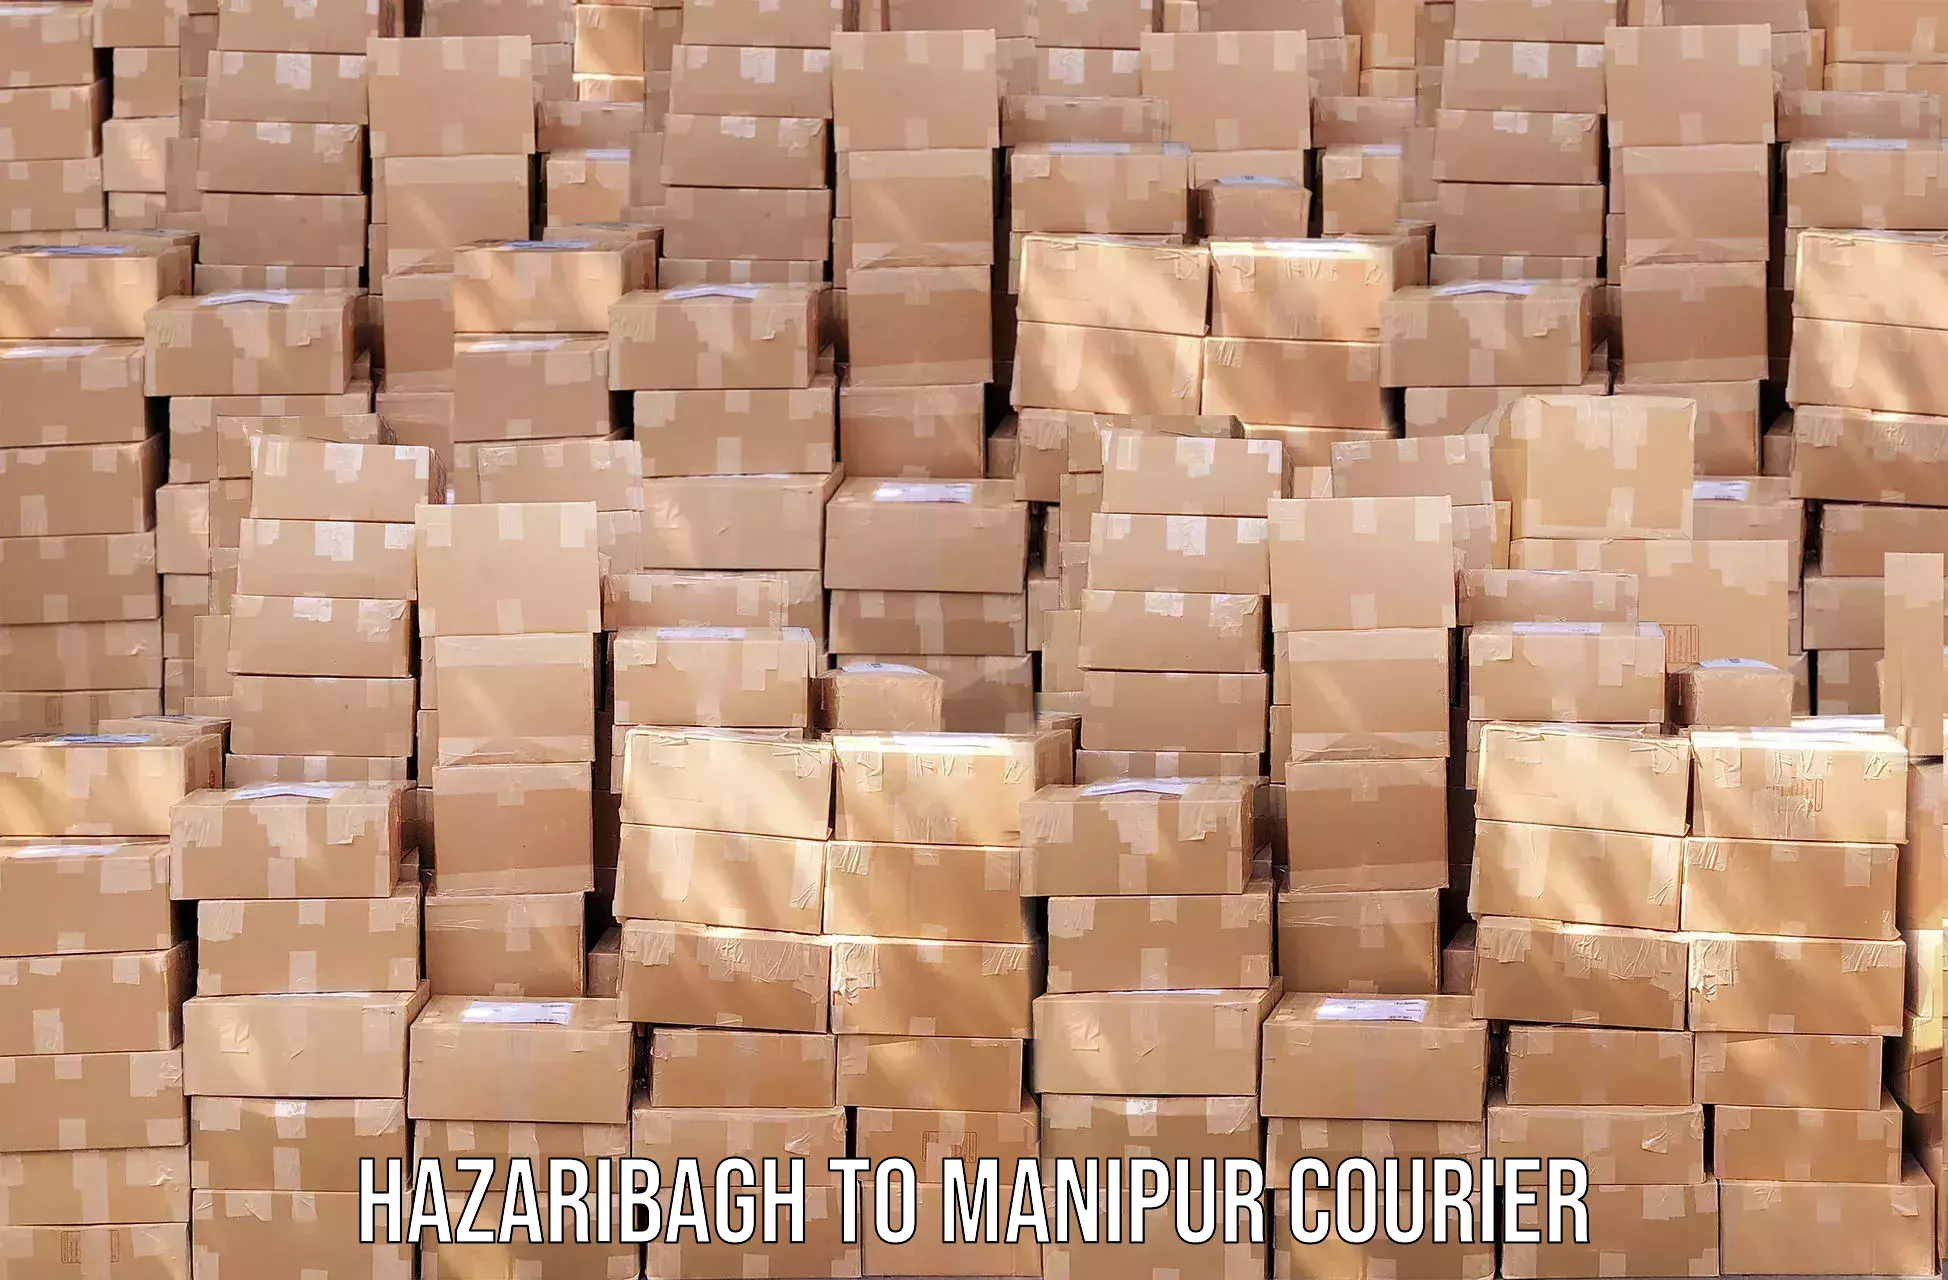 Professional courier handling Hazaribagh to Churachandpur